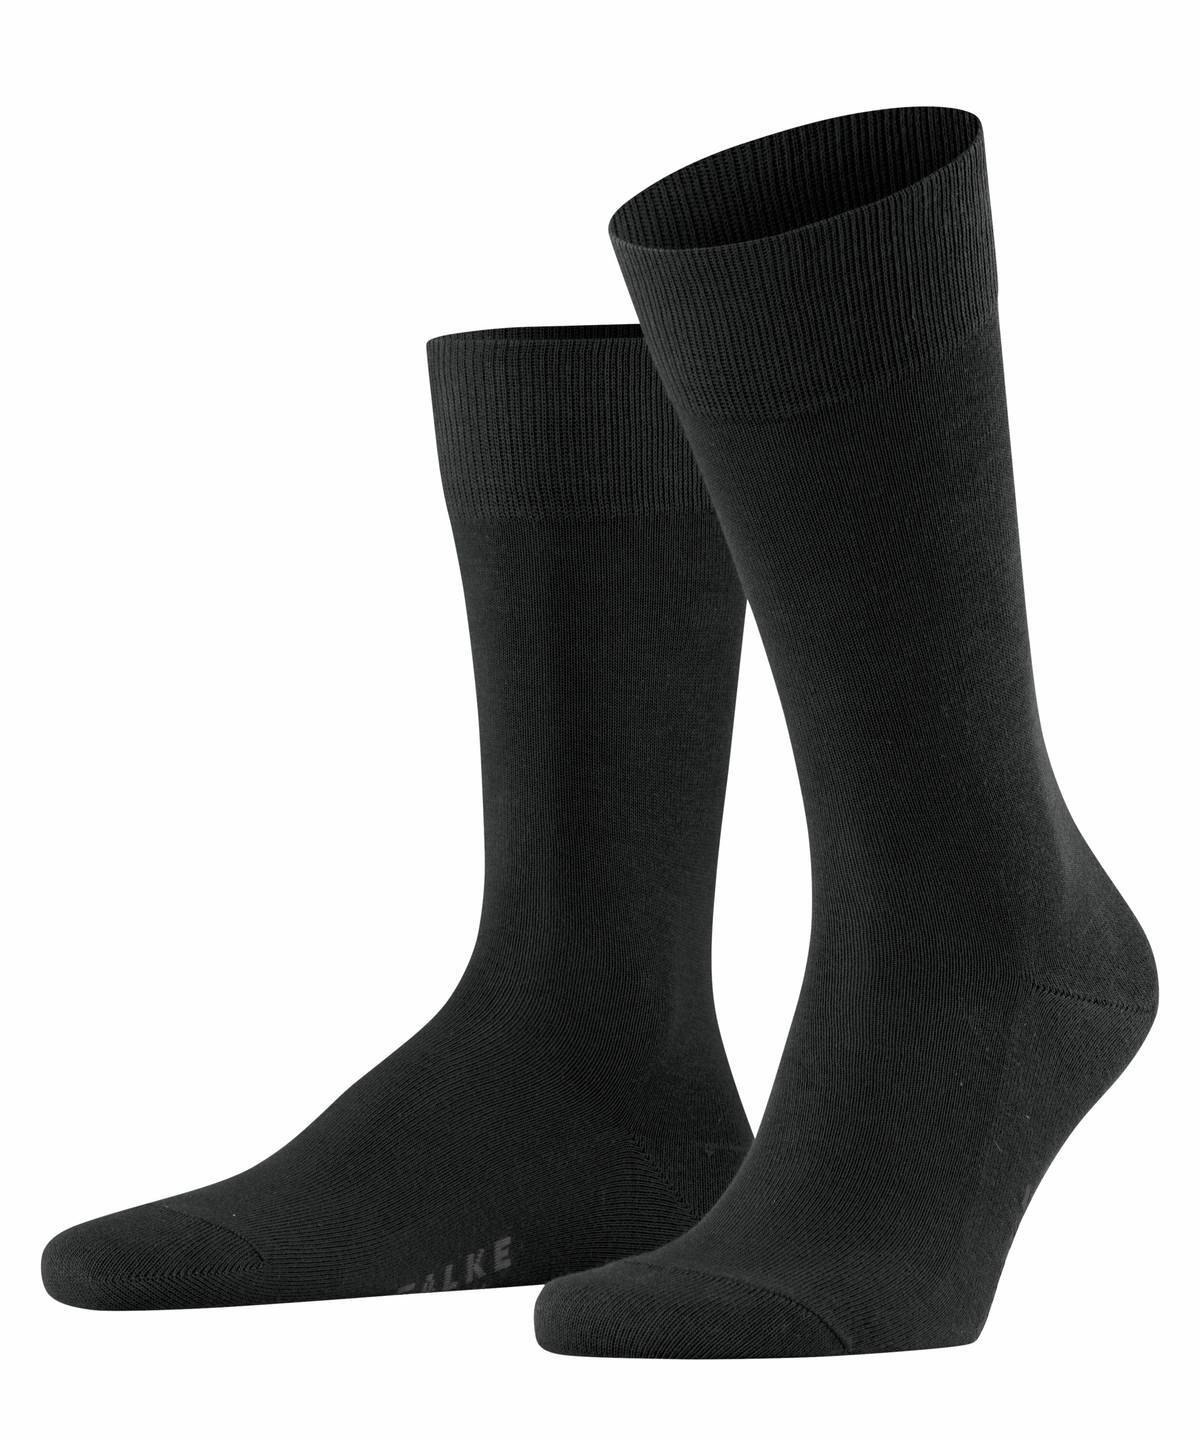 Falke Herren Socken Hersteller: Falke Bestellnummer:4031309170190